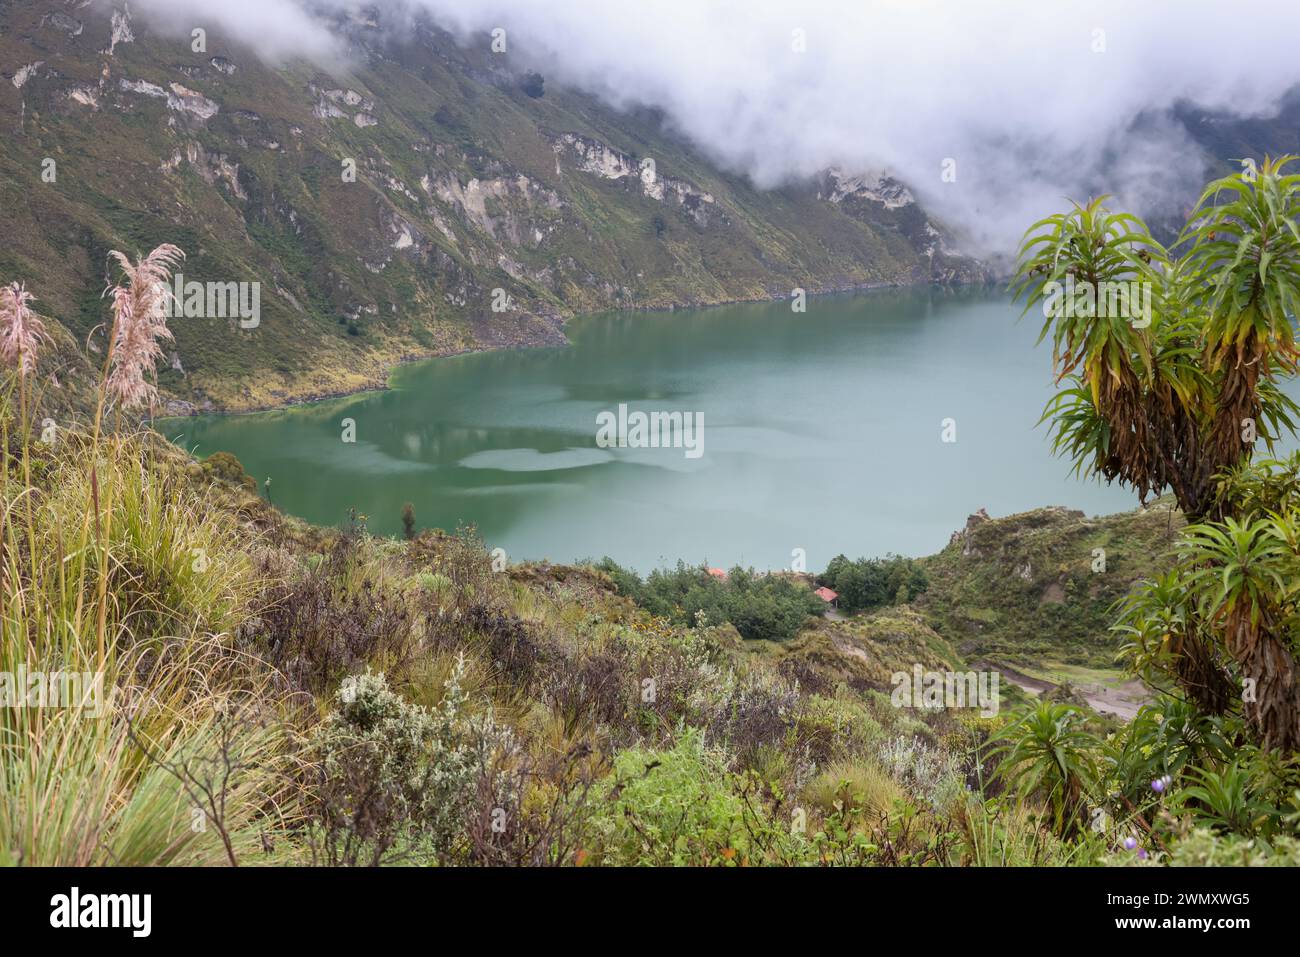 Laguna di Quilotoa Ecuador nel vulcano con acqua turchese. Visita questo bellissimo lago cratere e goditi il viaggio verso queste attrazioni uniche. Foto Stock